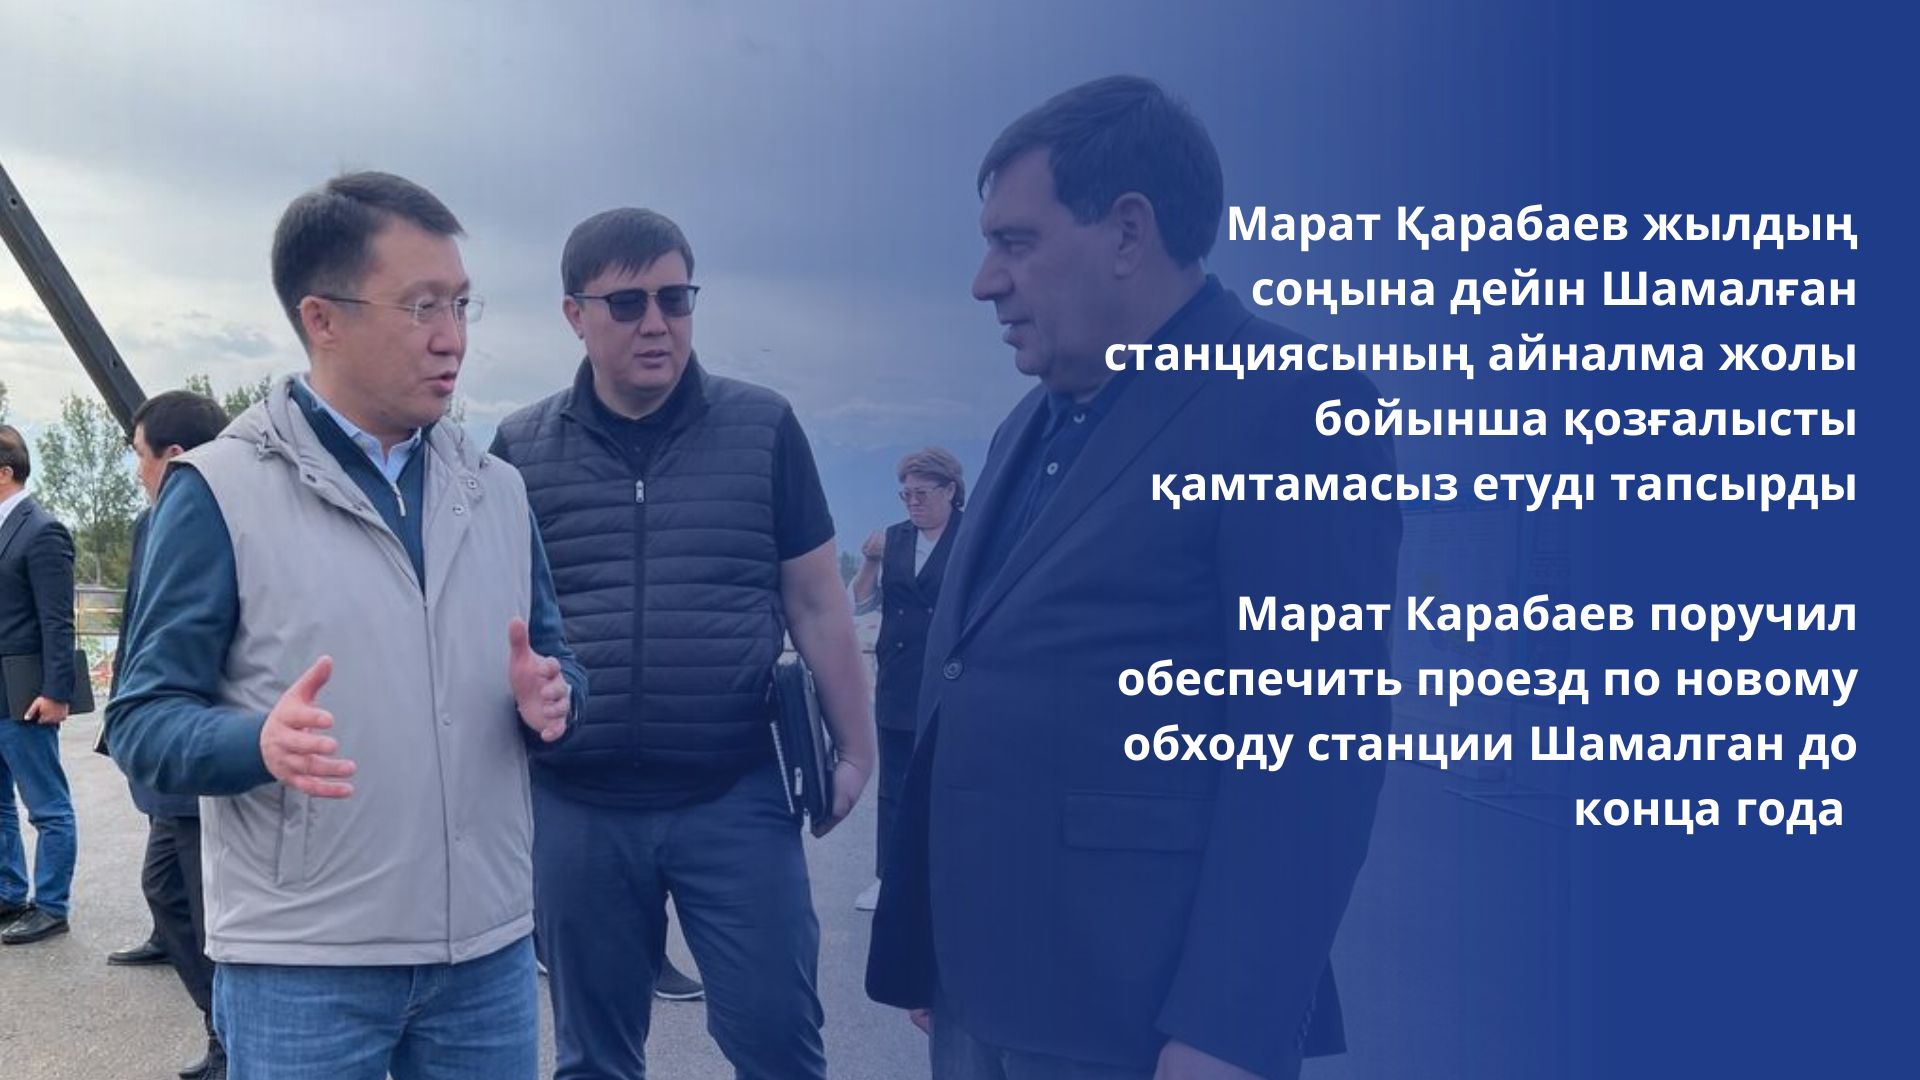 Марат Карабаев поручил обеспечить проезд по новому обходу станции Шамалган до конца года